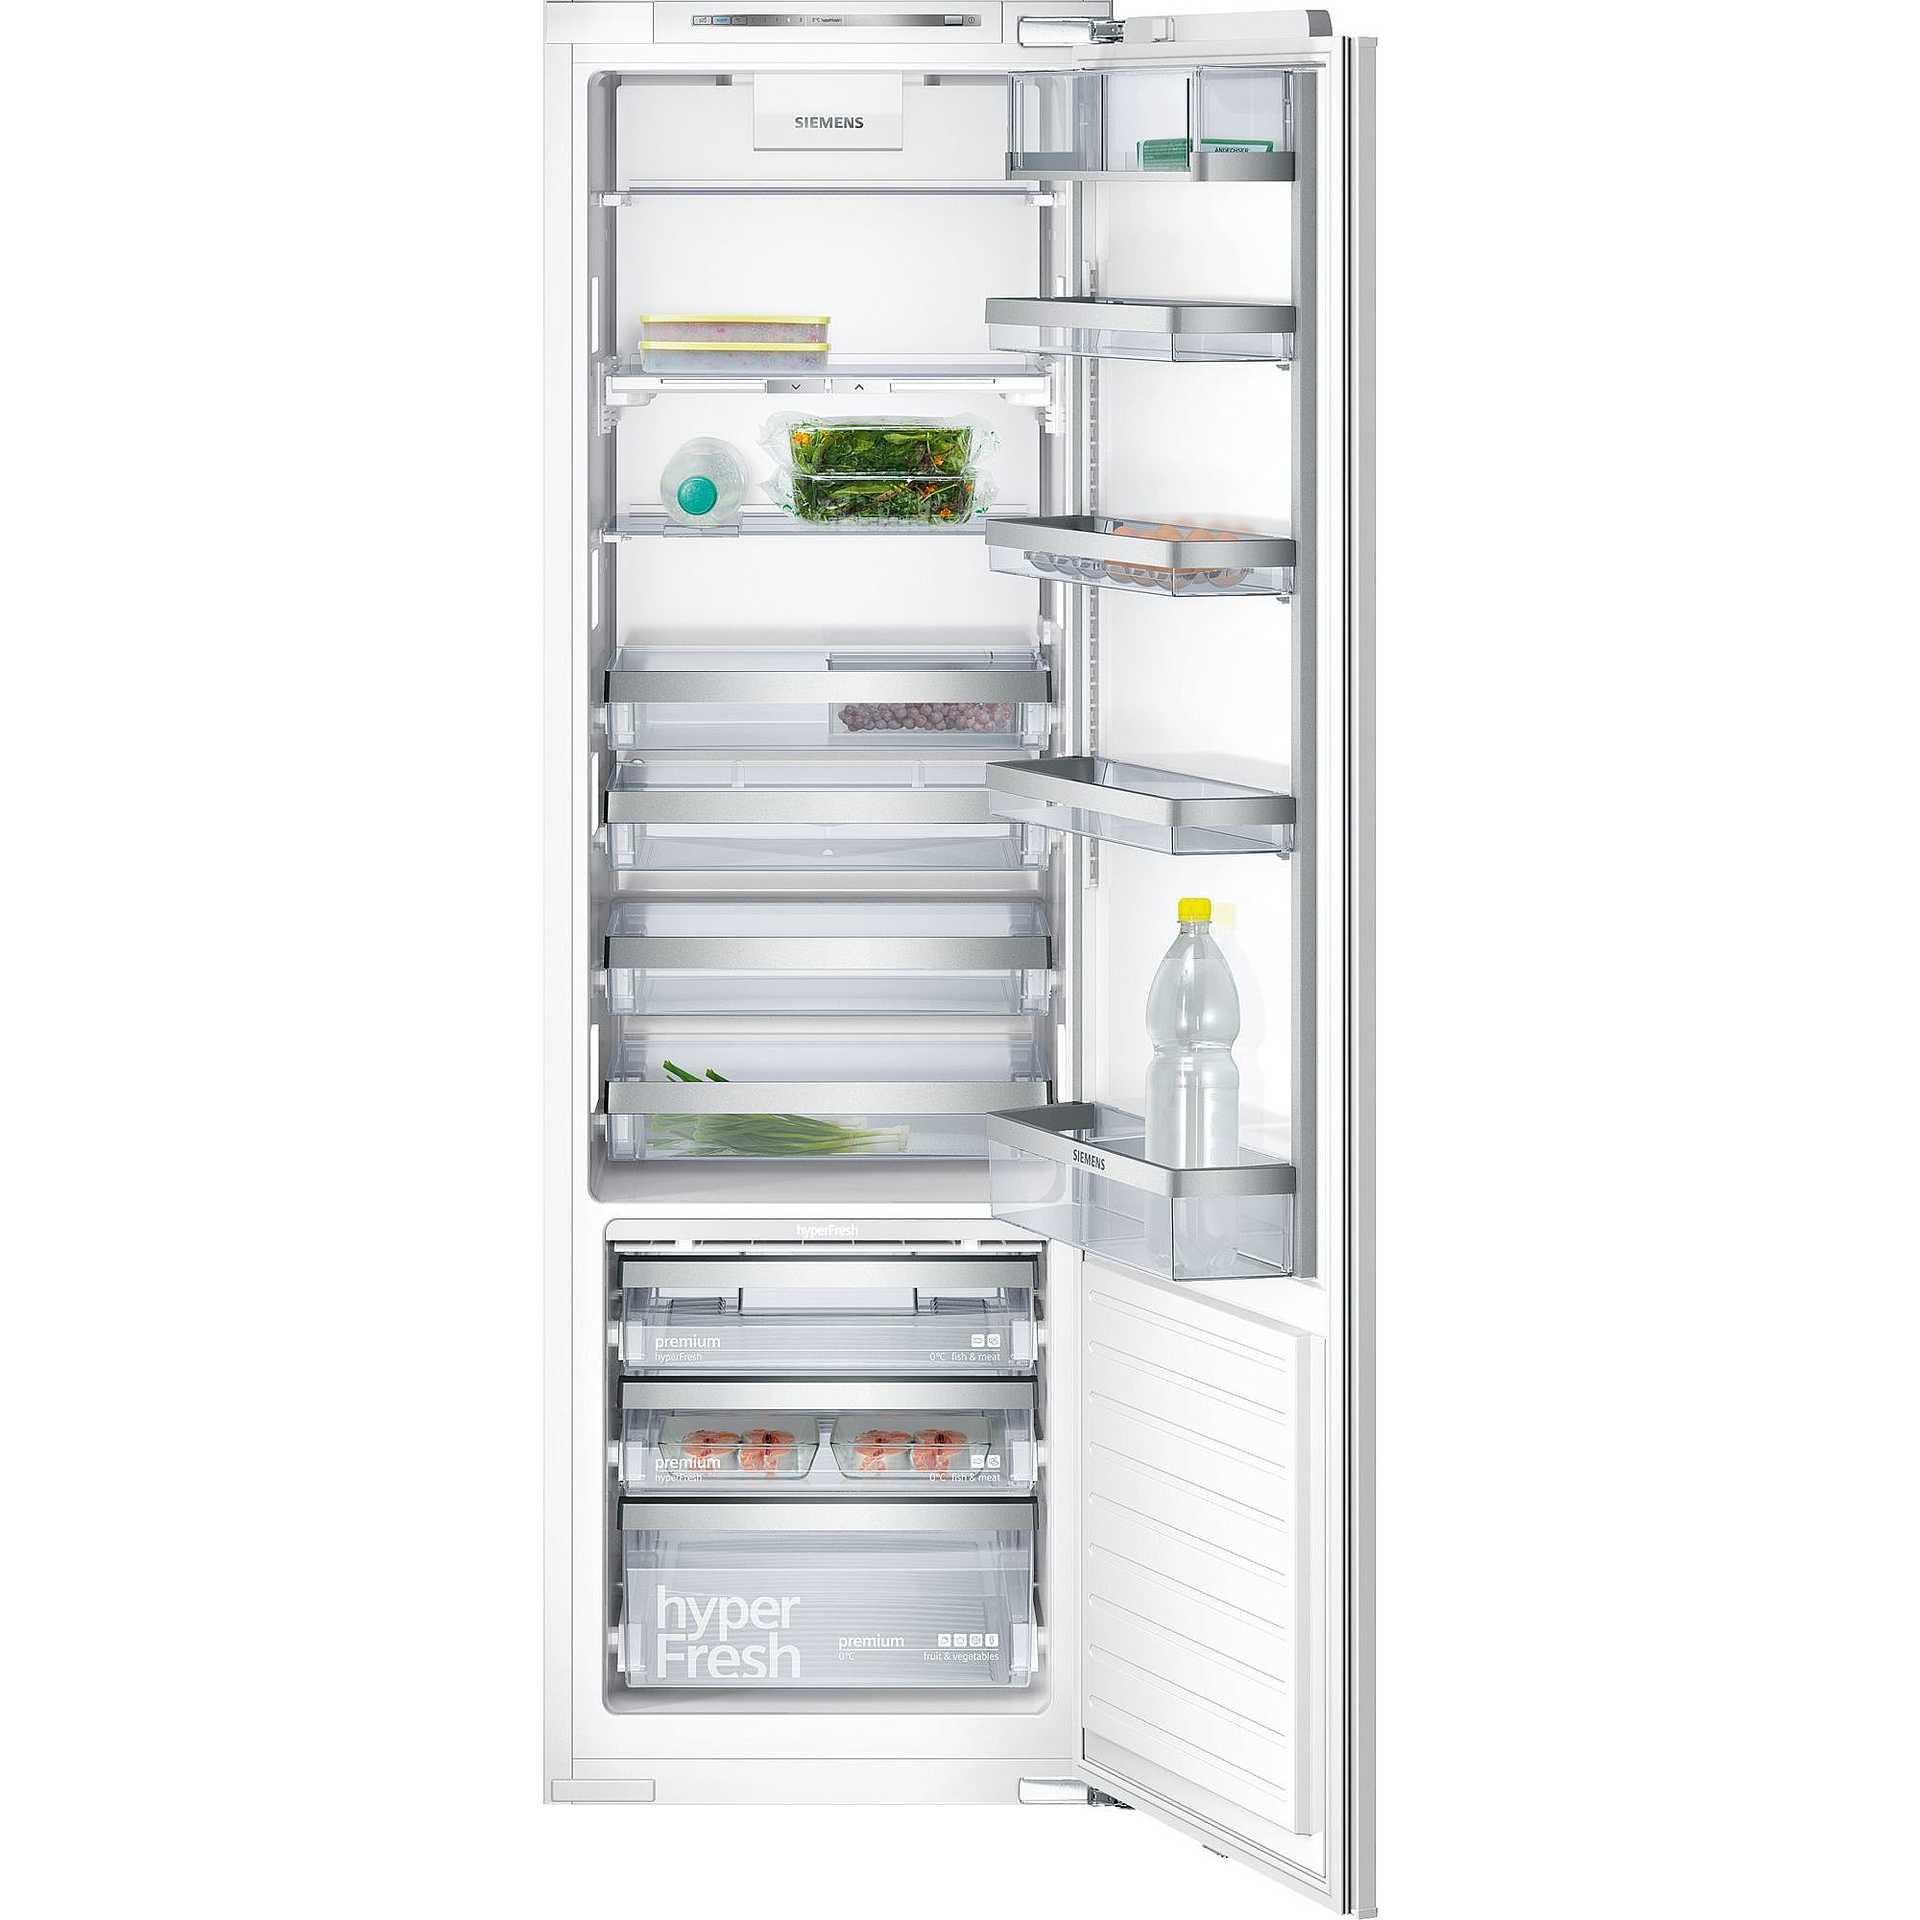 Холодильник встроенный двухкамерный no frost. Холодильник Siemens ki42fp60. Встраиваемый холодильник Siemens ki42fp60. Встраиваемый холодильник Siemens ki86saf30. Холодильник Siemens Siemens ki24f01.